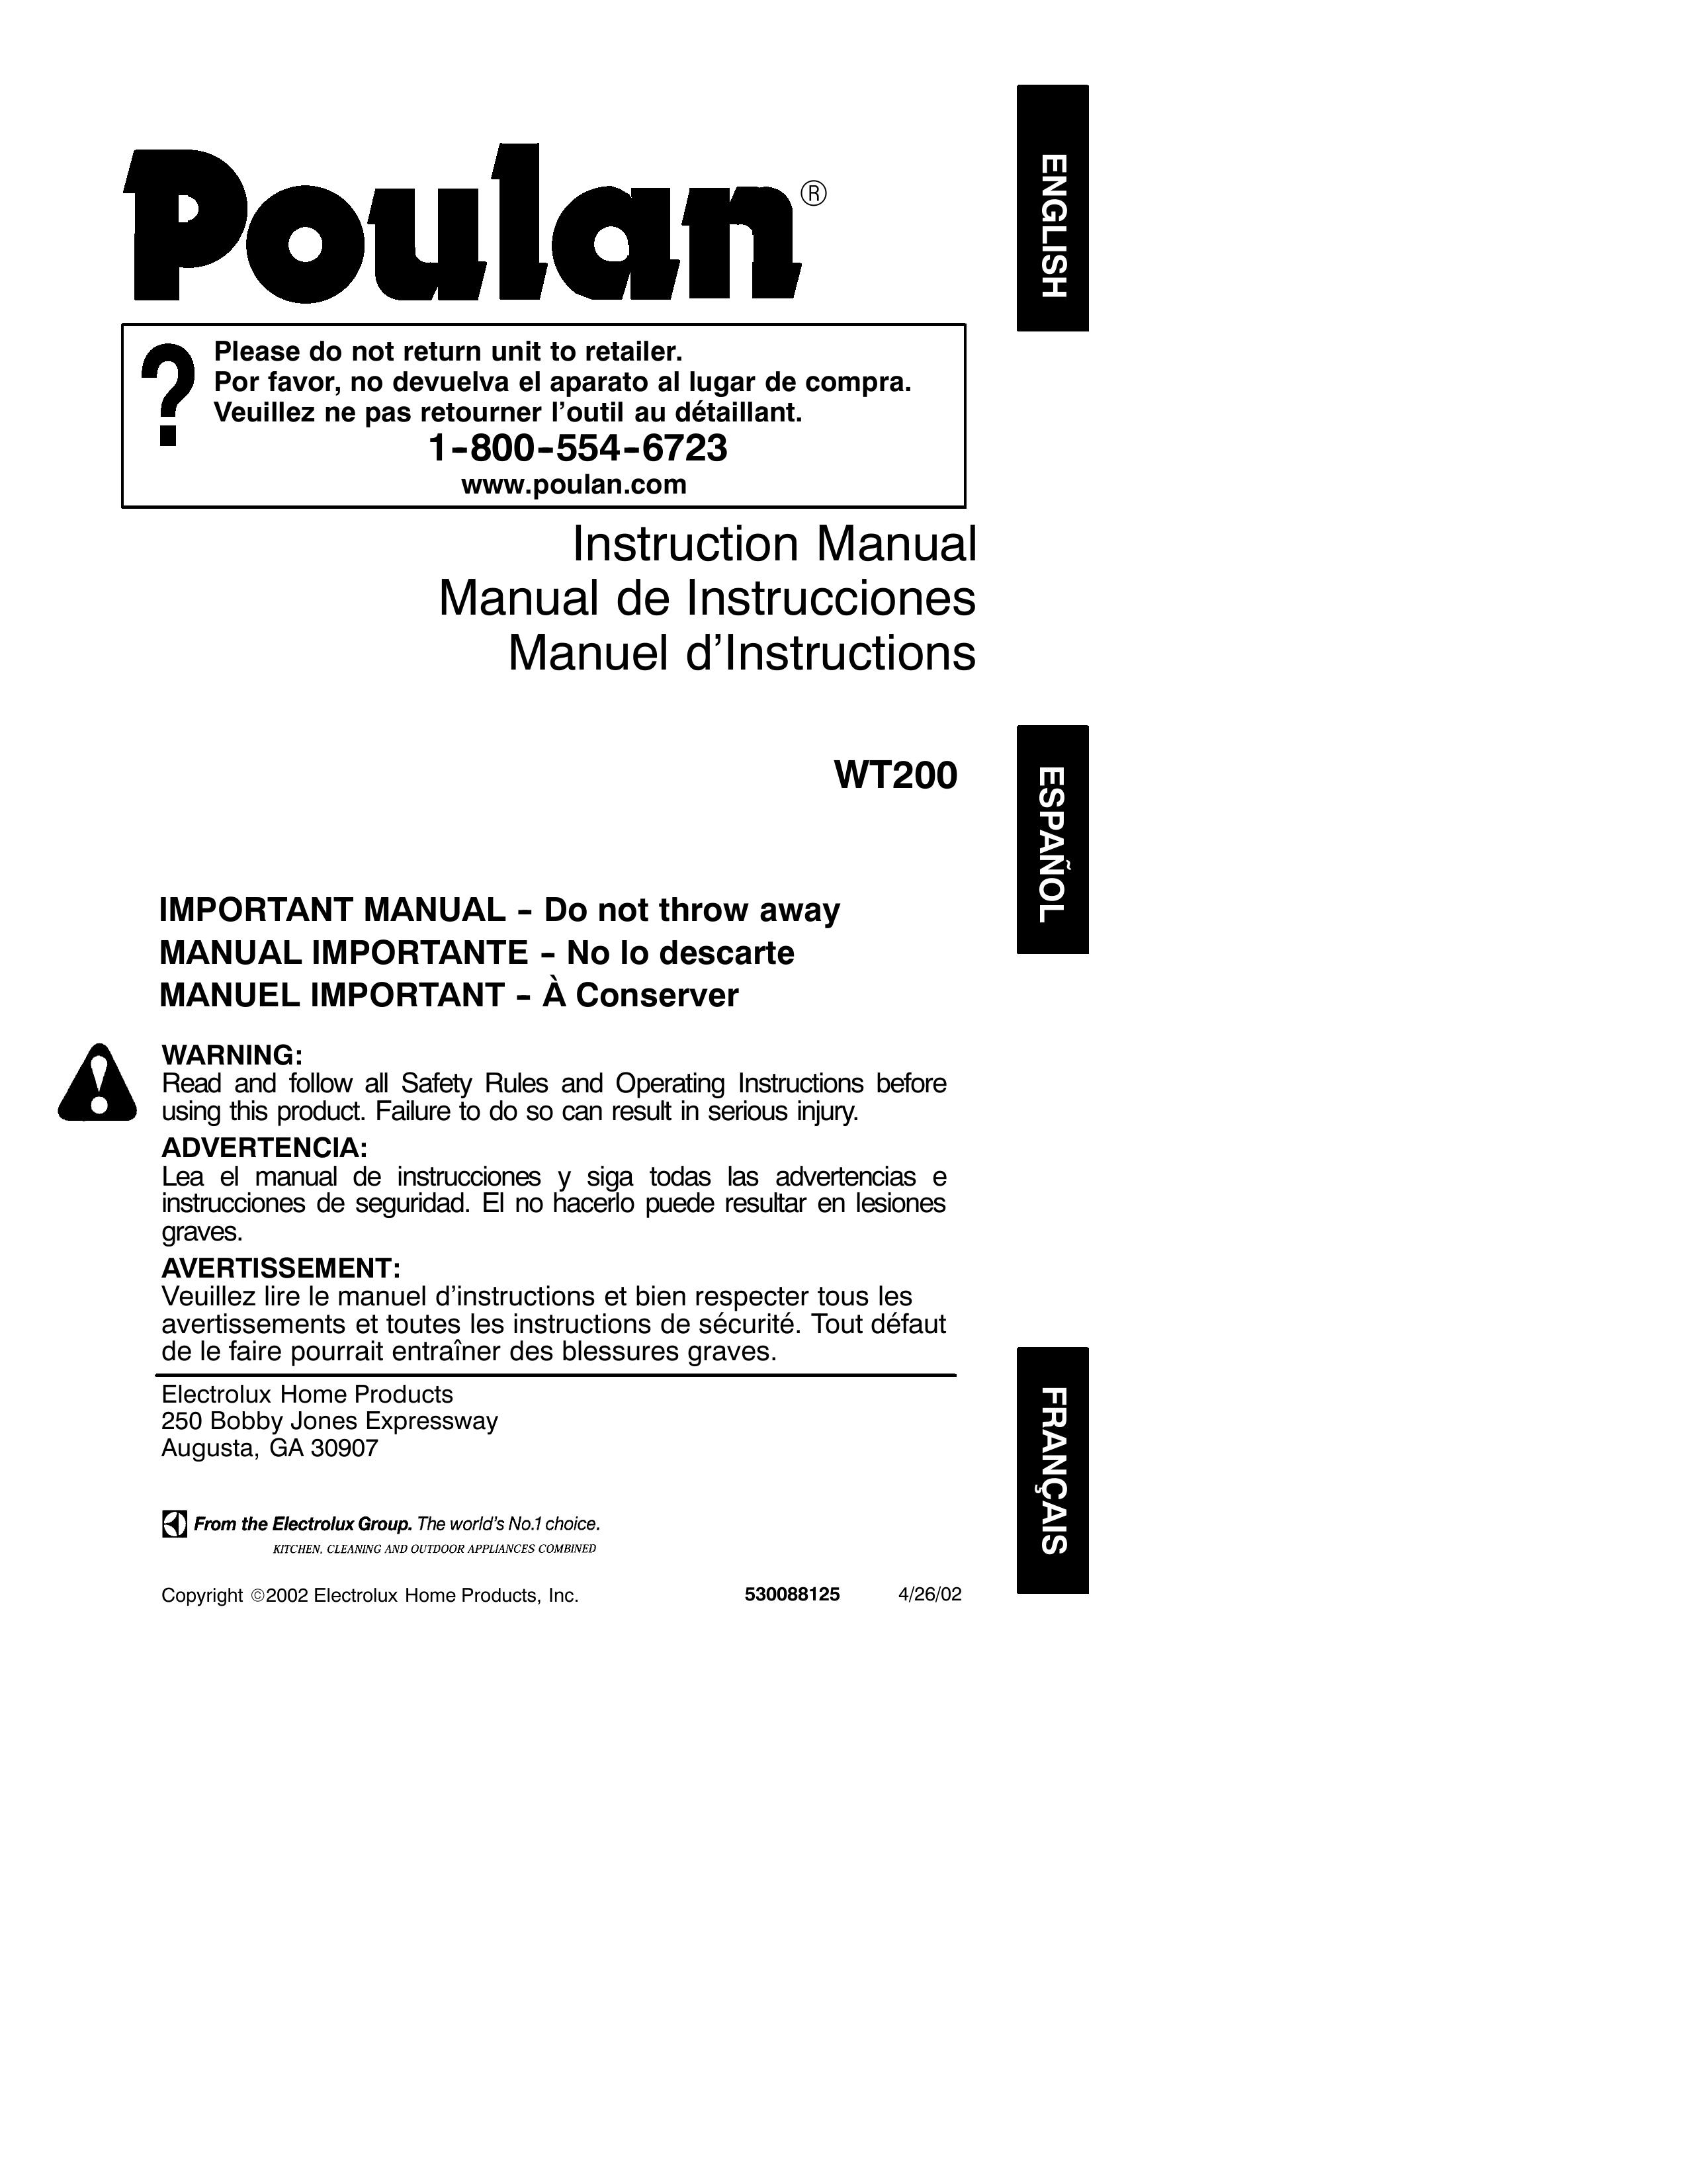 Poulan 530088125 Blower User Manual